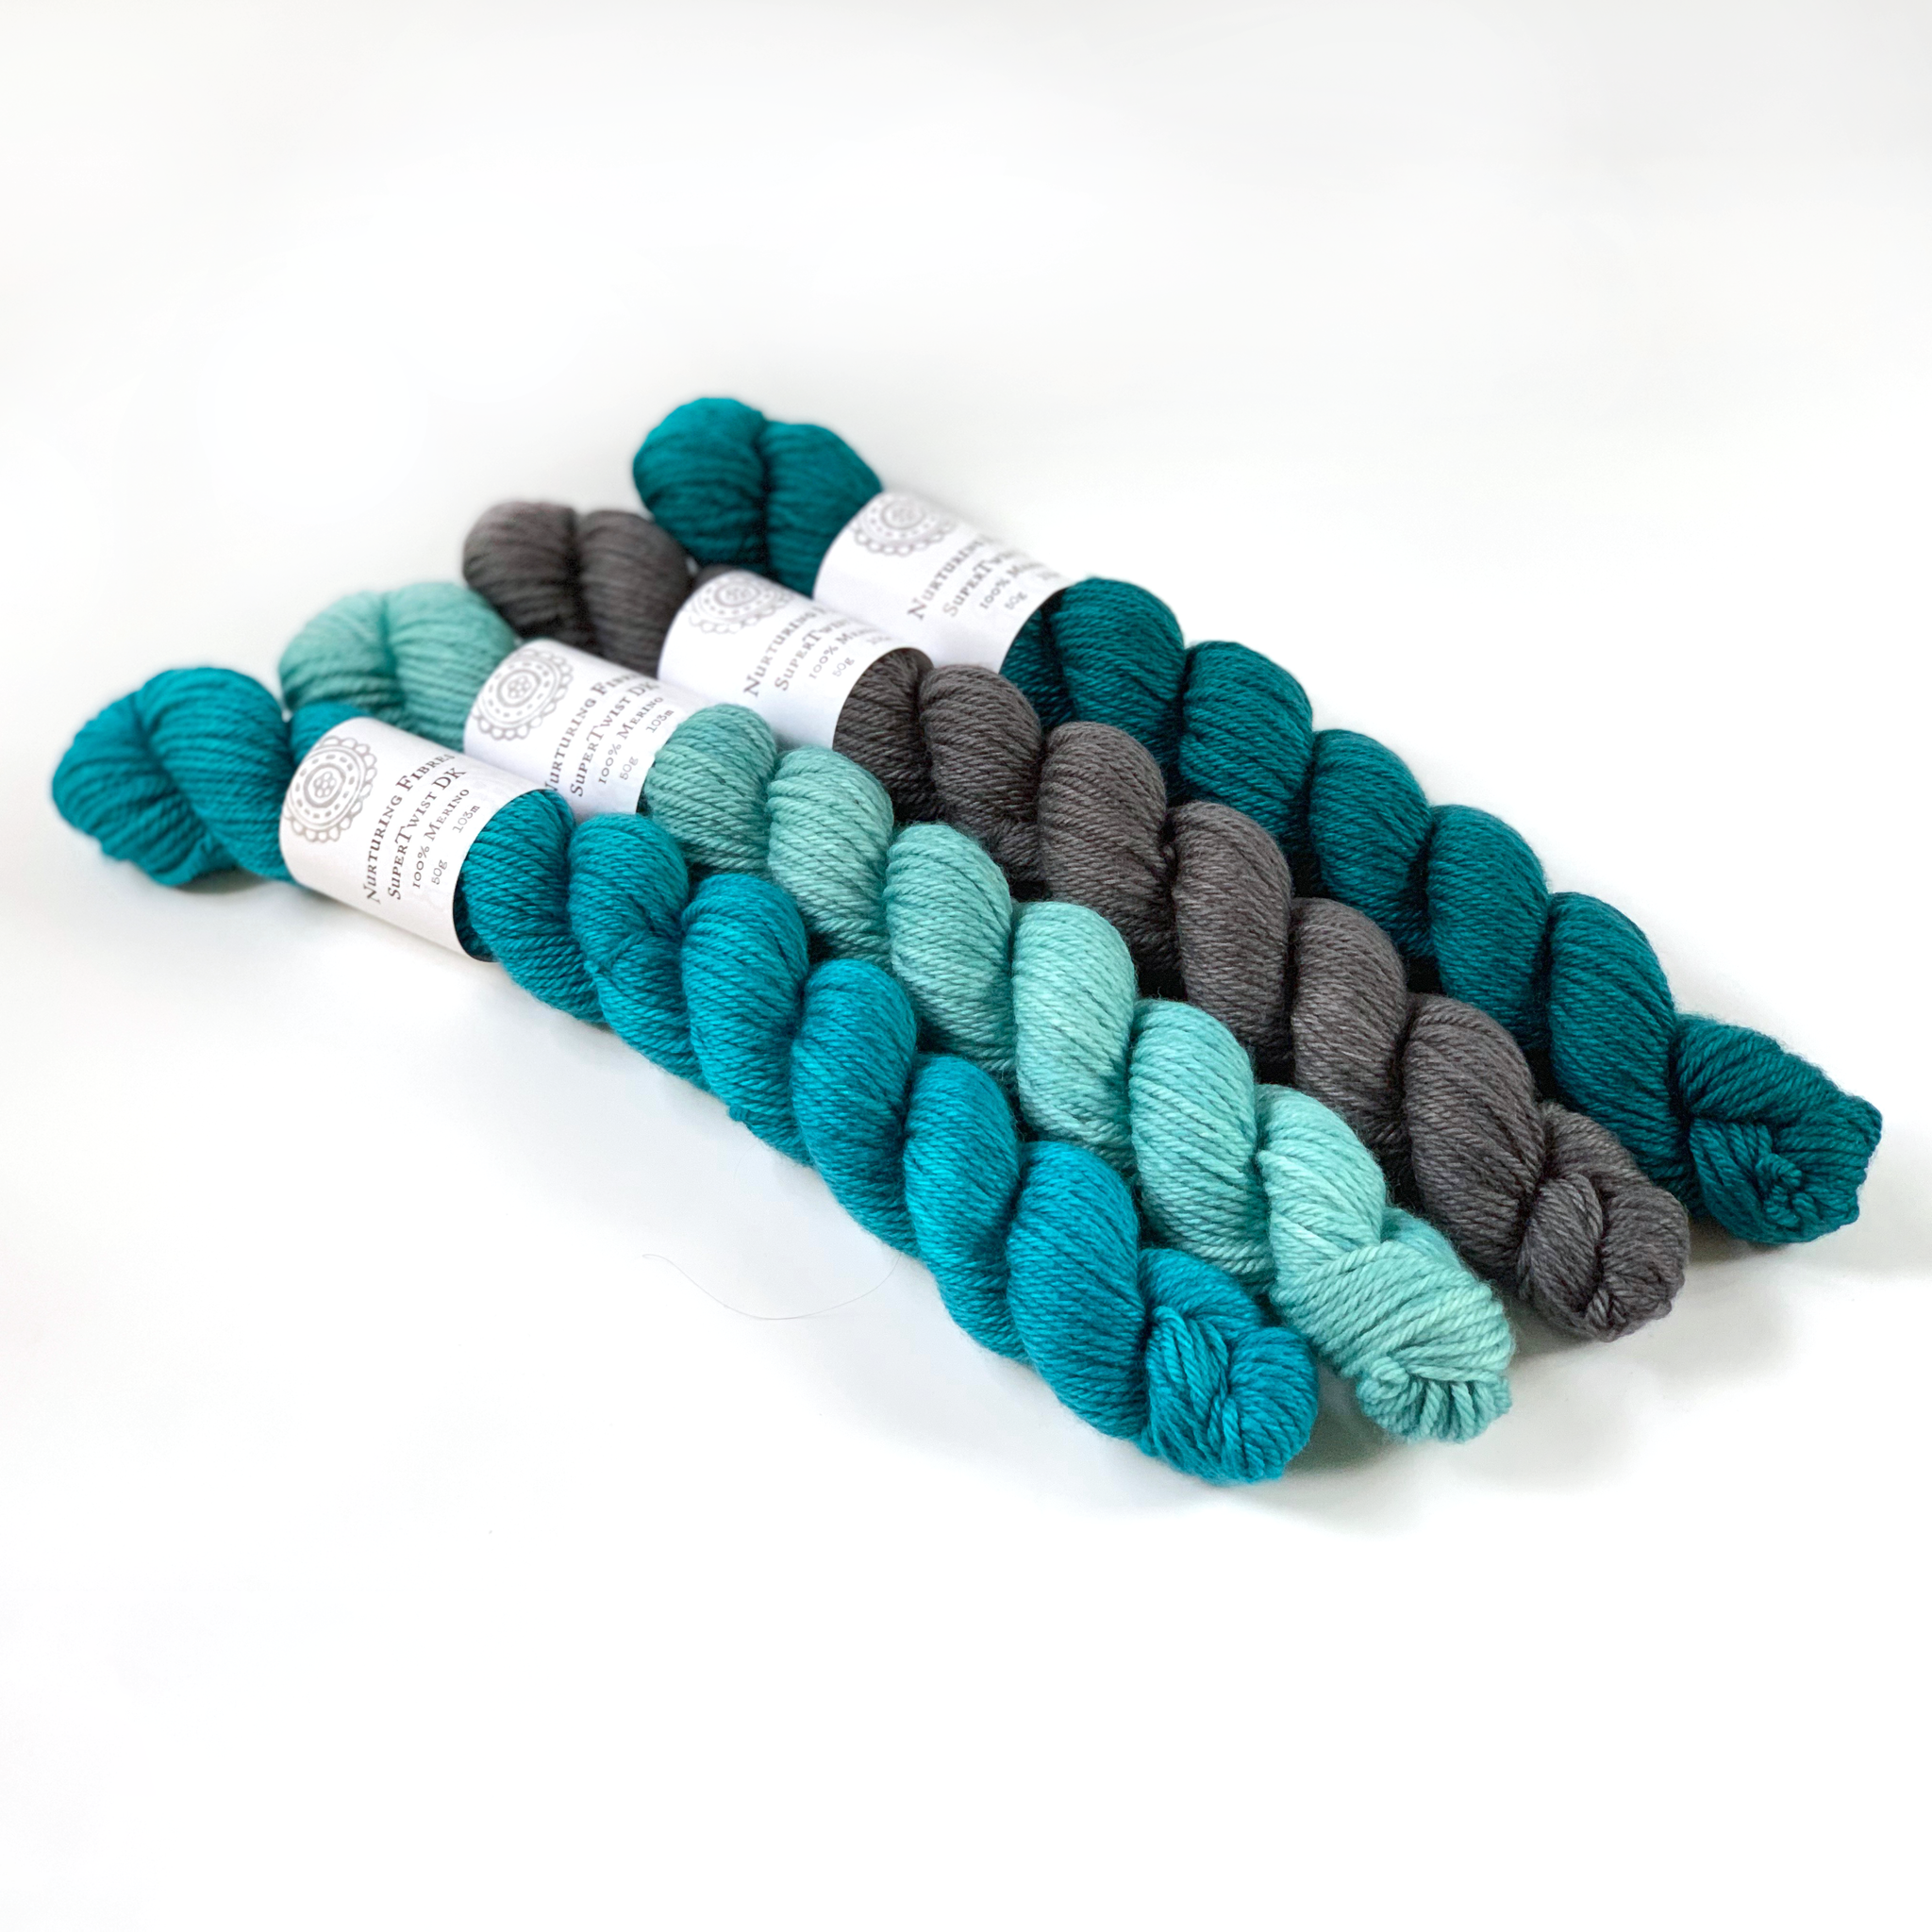 Nurturing Fibres  SuperTwist DK Yarn: 50g Merino Wool – Good